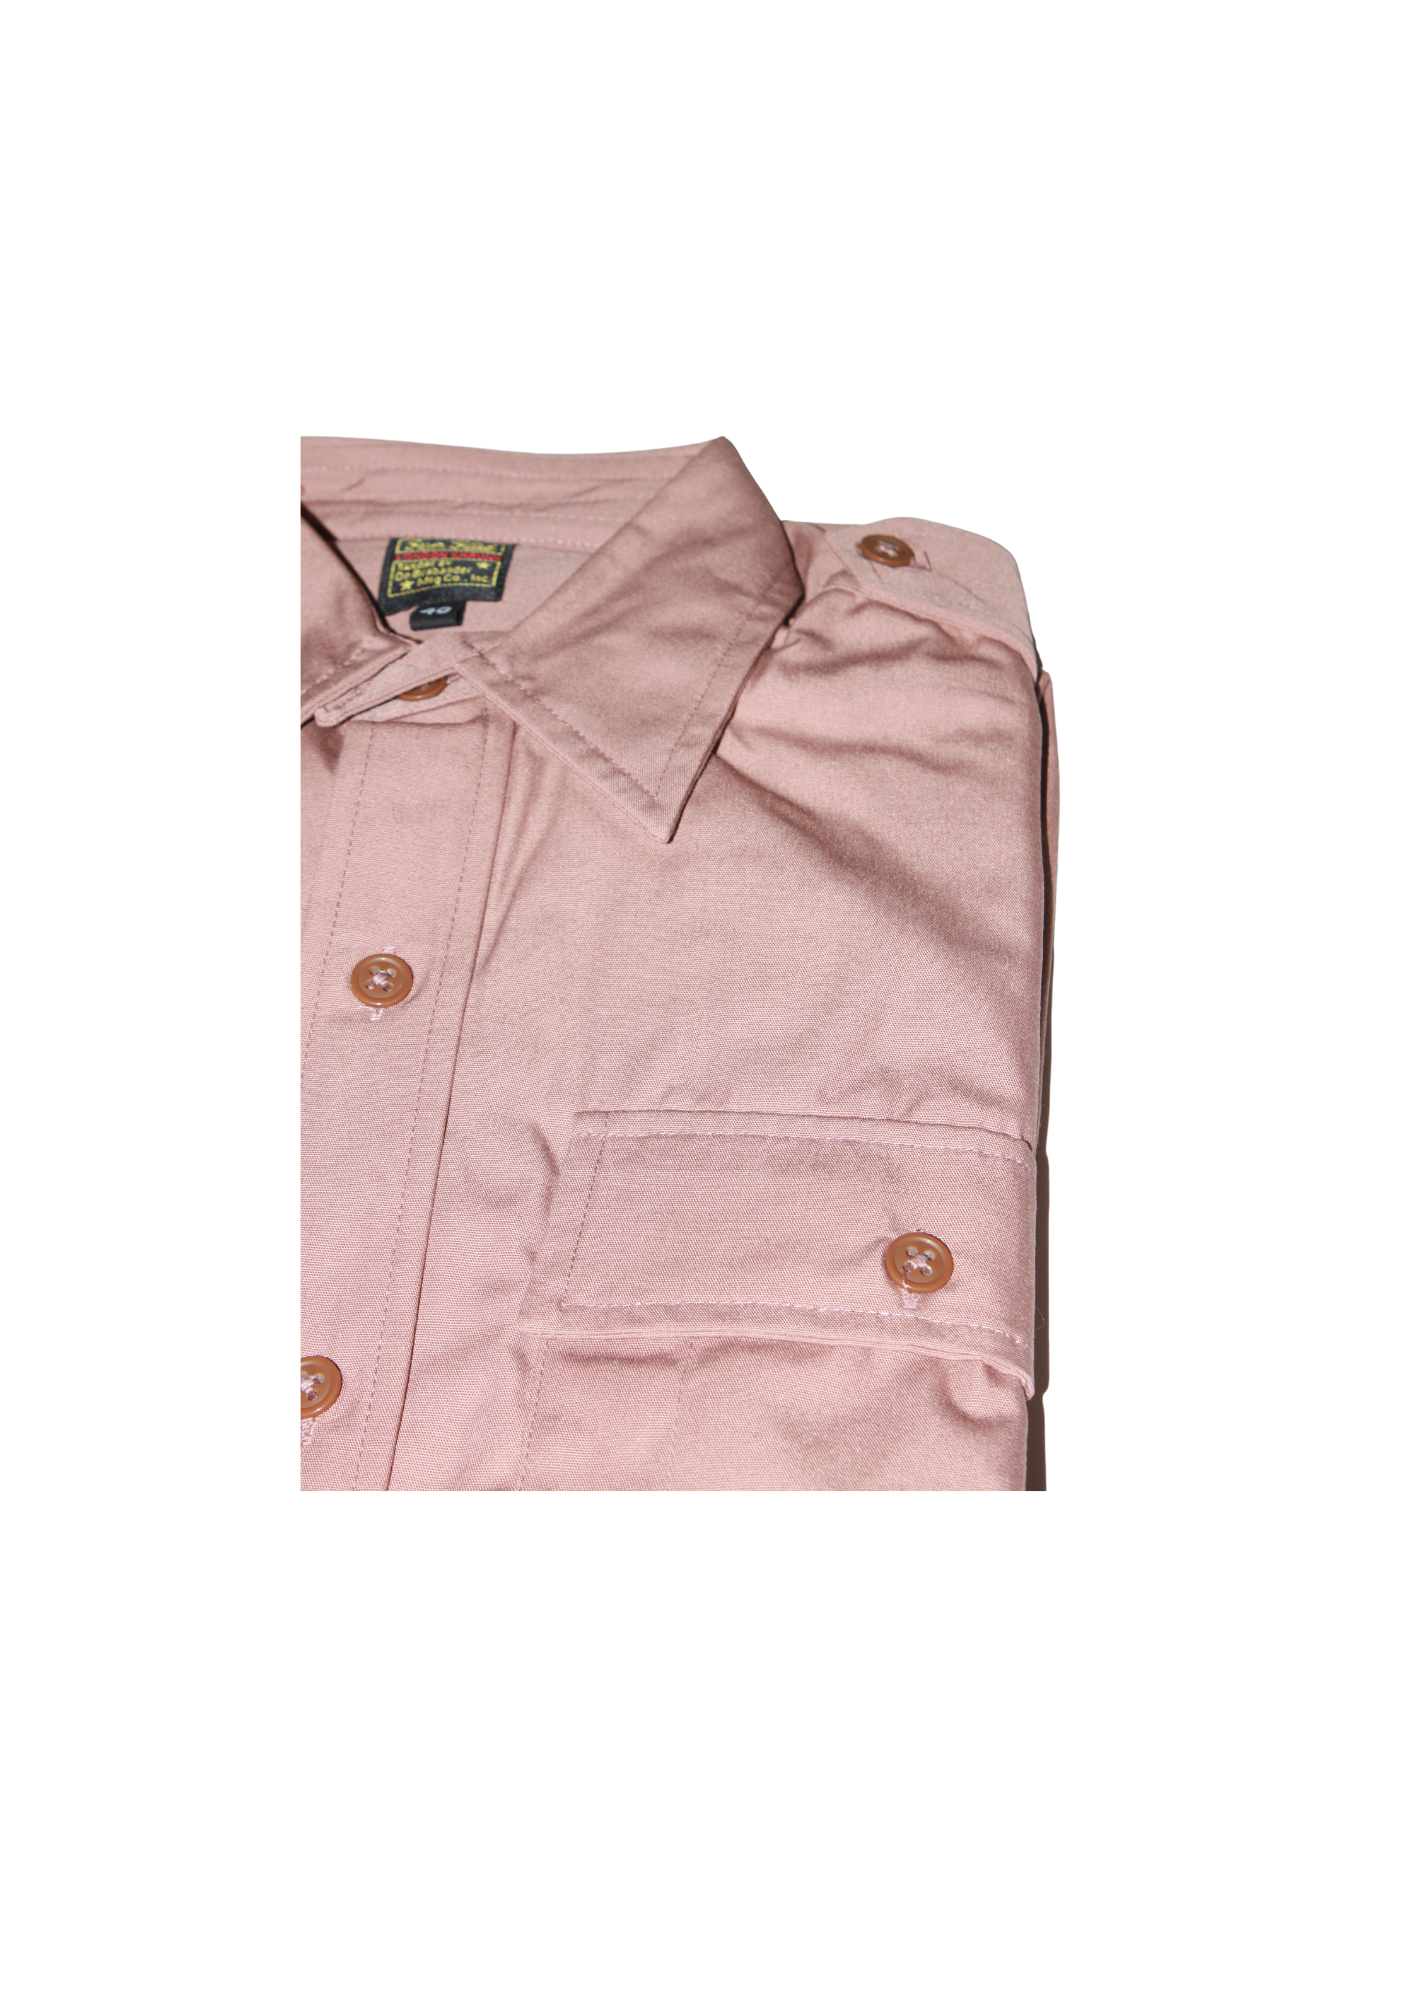 Officer “Pink” Shirt